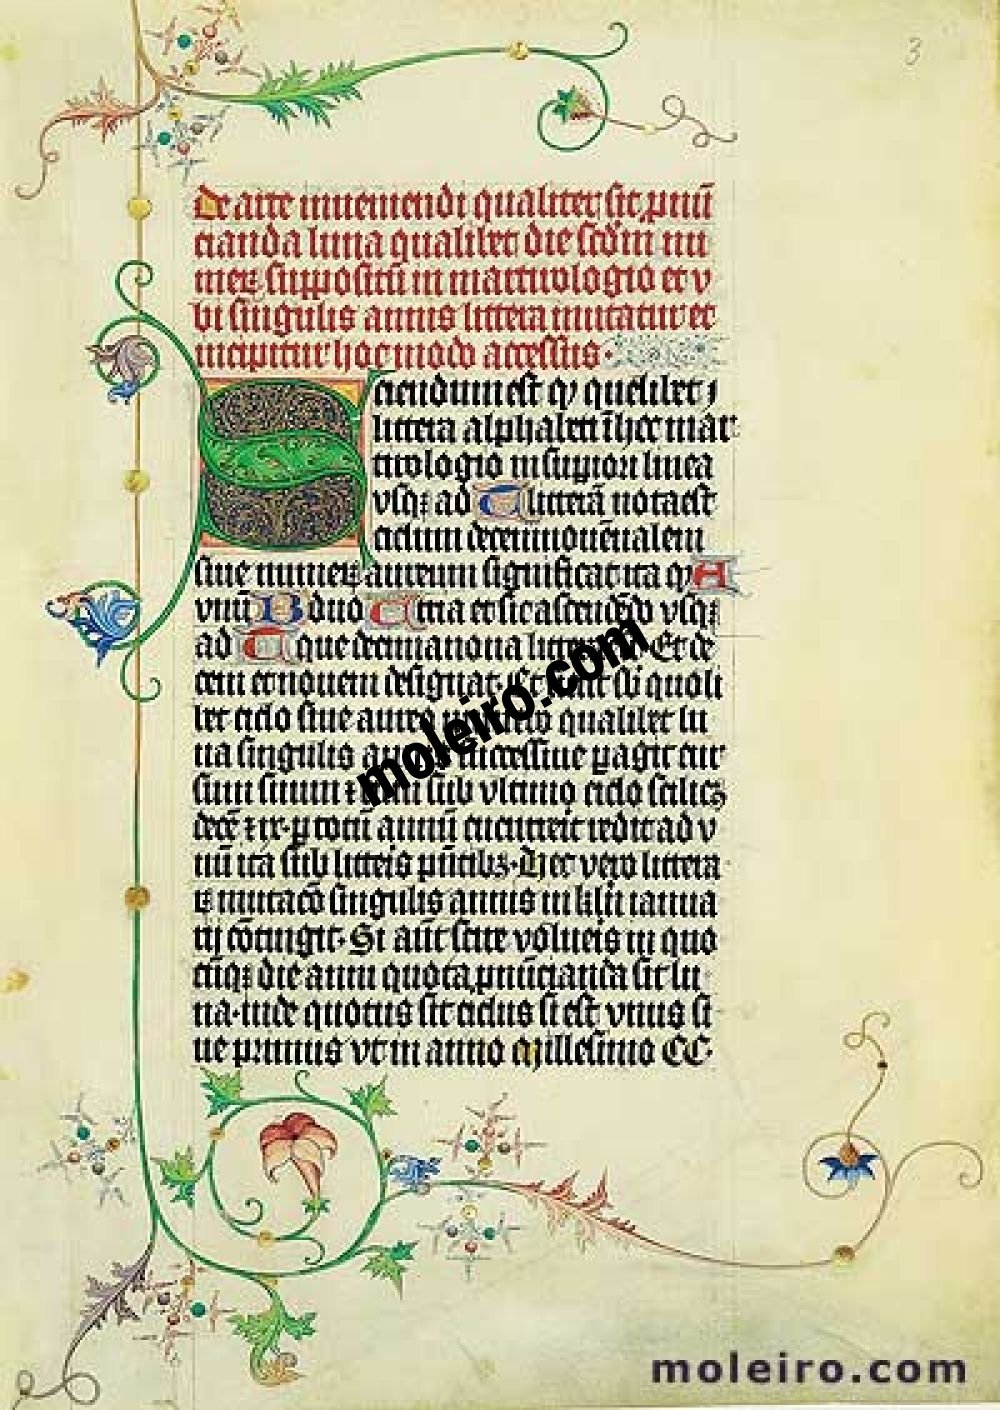 Martirológio de Usuardo folio 3r